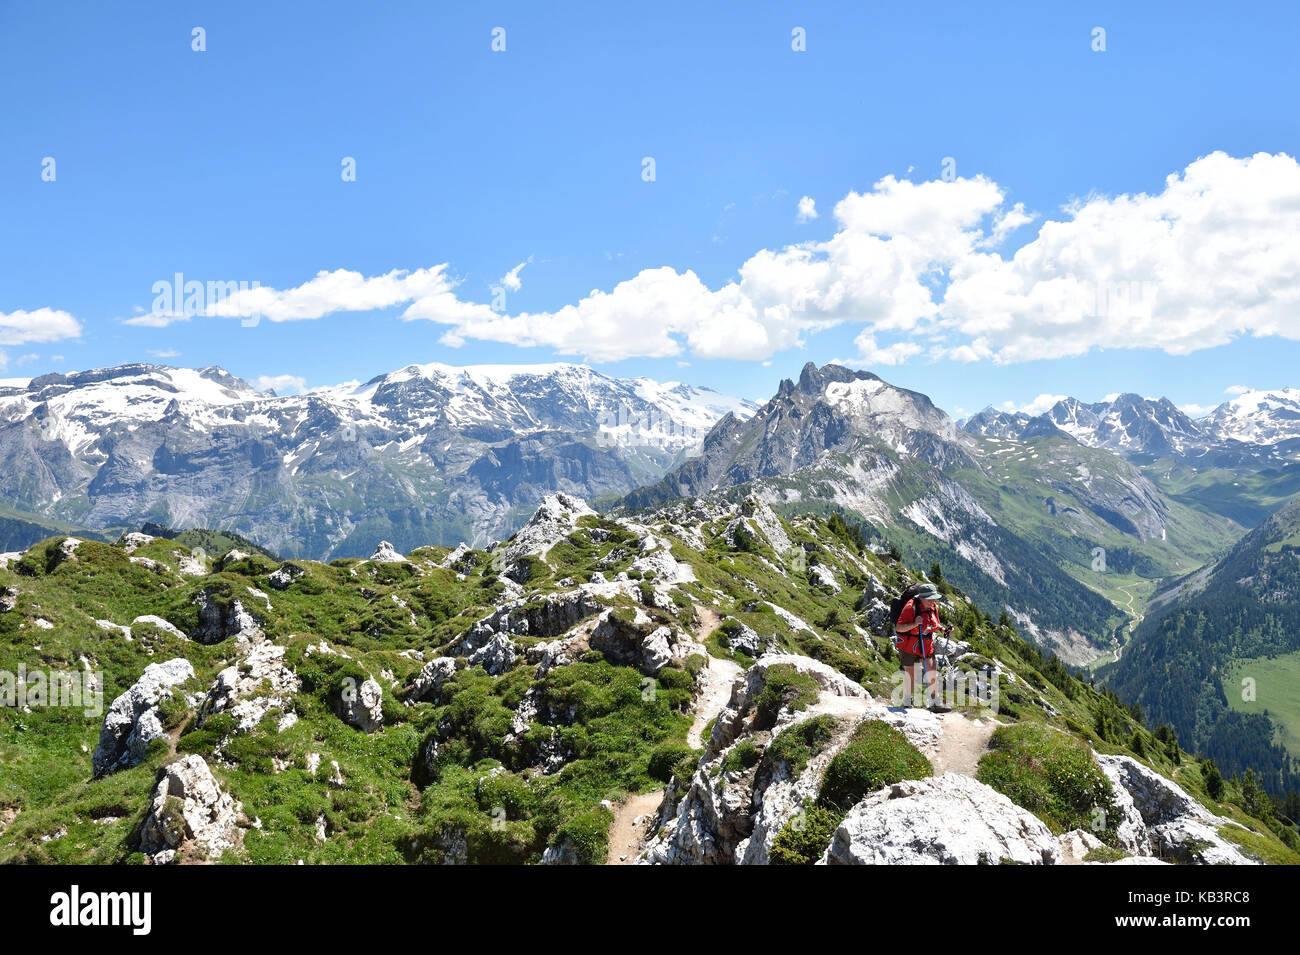 Francia, Savoie, massiccio della Vanoise, Valle Tarentaise, Courchevel, escursionismo sul Dent du Villard (2284 m) e il picco del Monte Charvet affacciato di Bellecote vetta (3416 m), il Dome de la Sache (3606m) e Aiguille de Mey (2844m) del Parco Nazionale della Vanoise Foto Stock